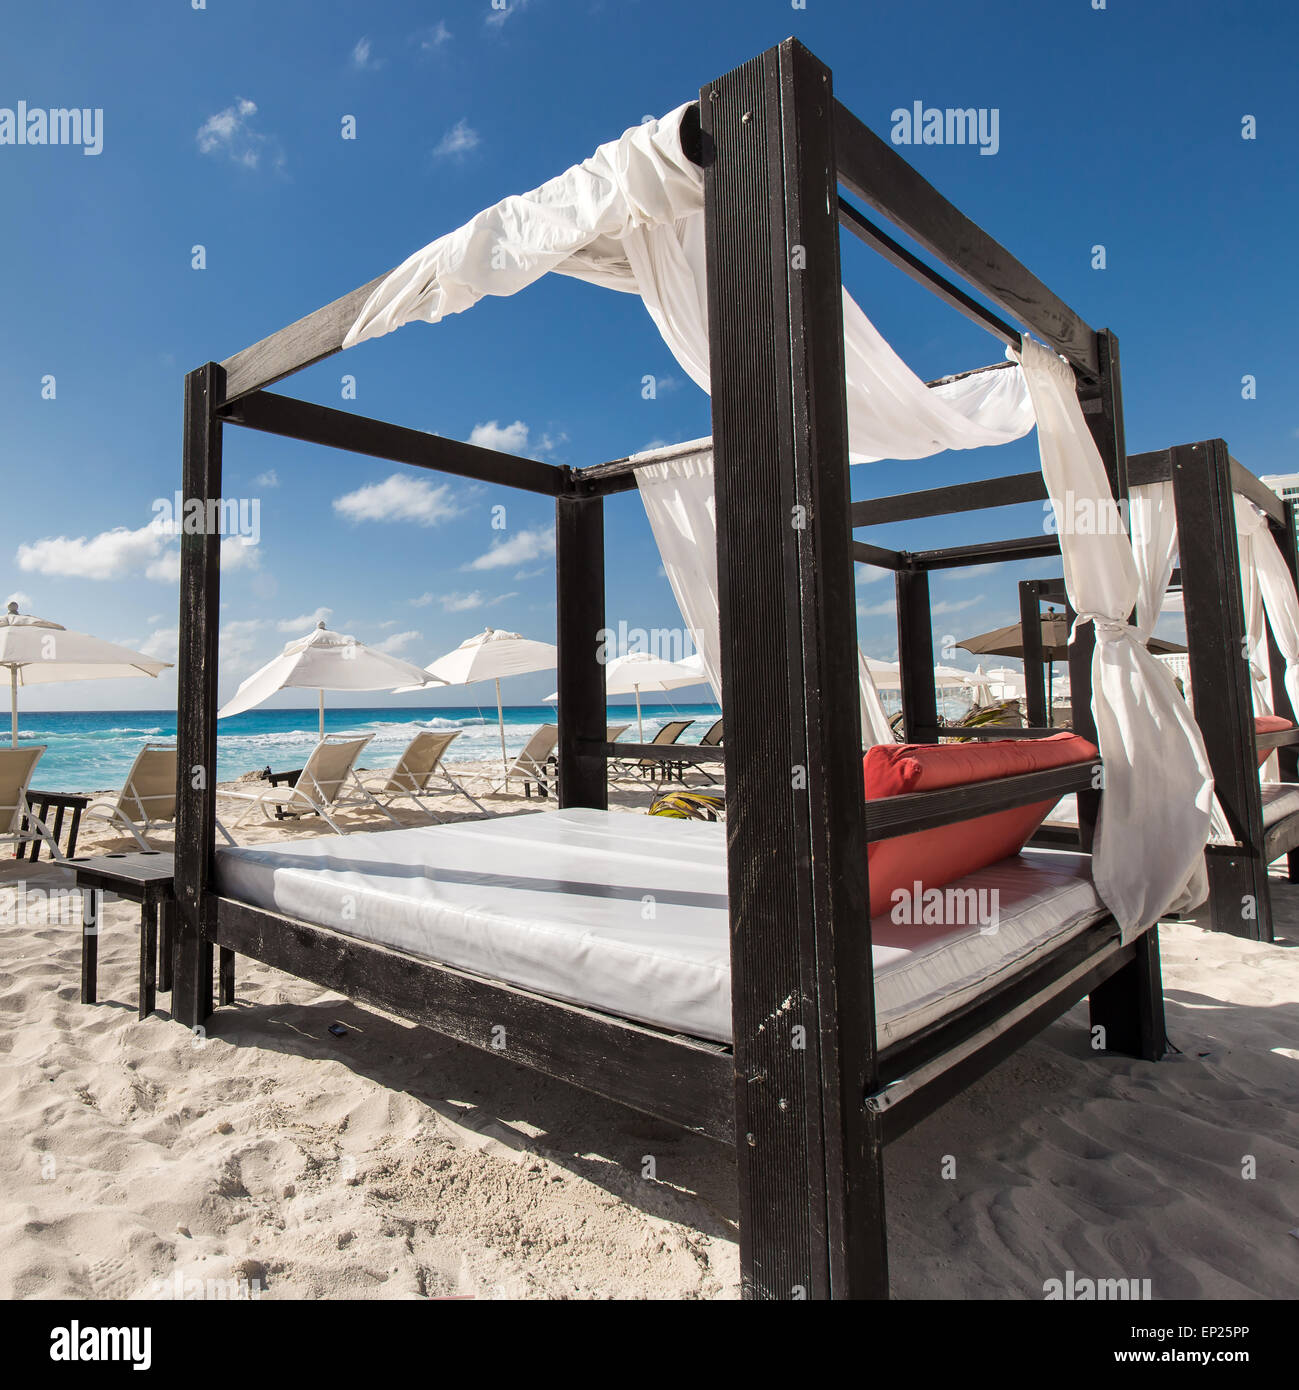 Luxury lettini in legno su una bella spiaggia caraibica Foto Stock